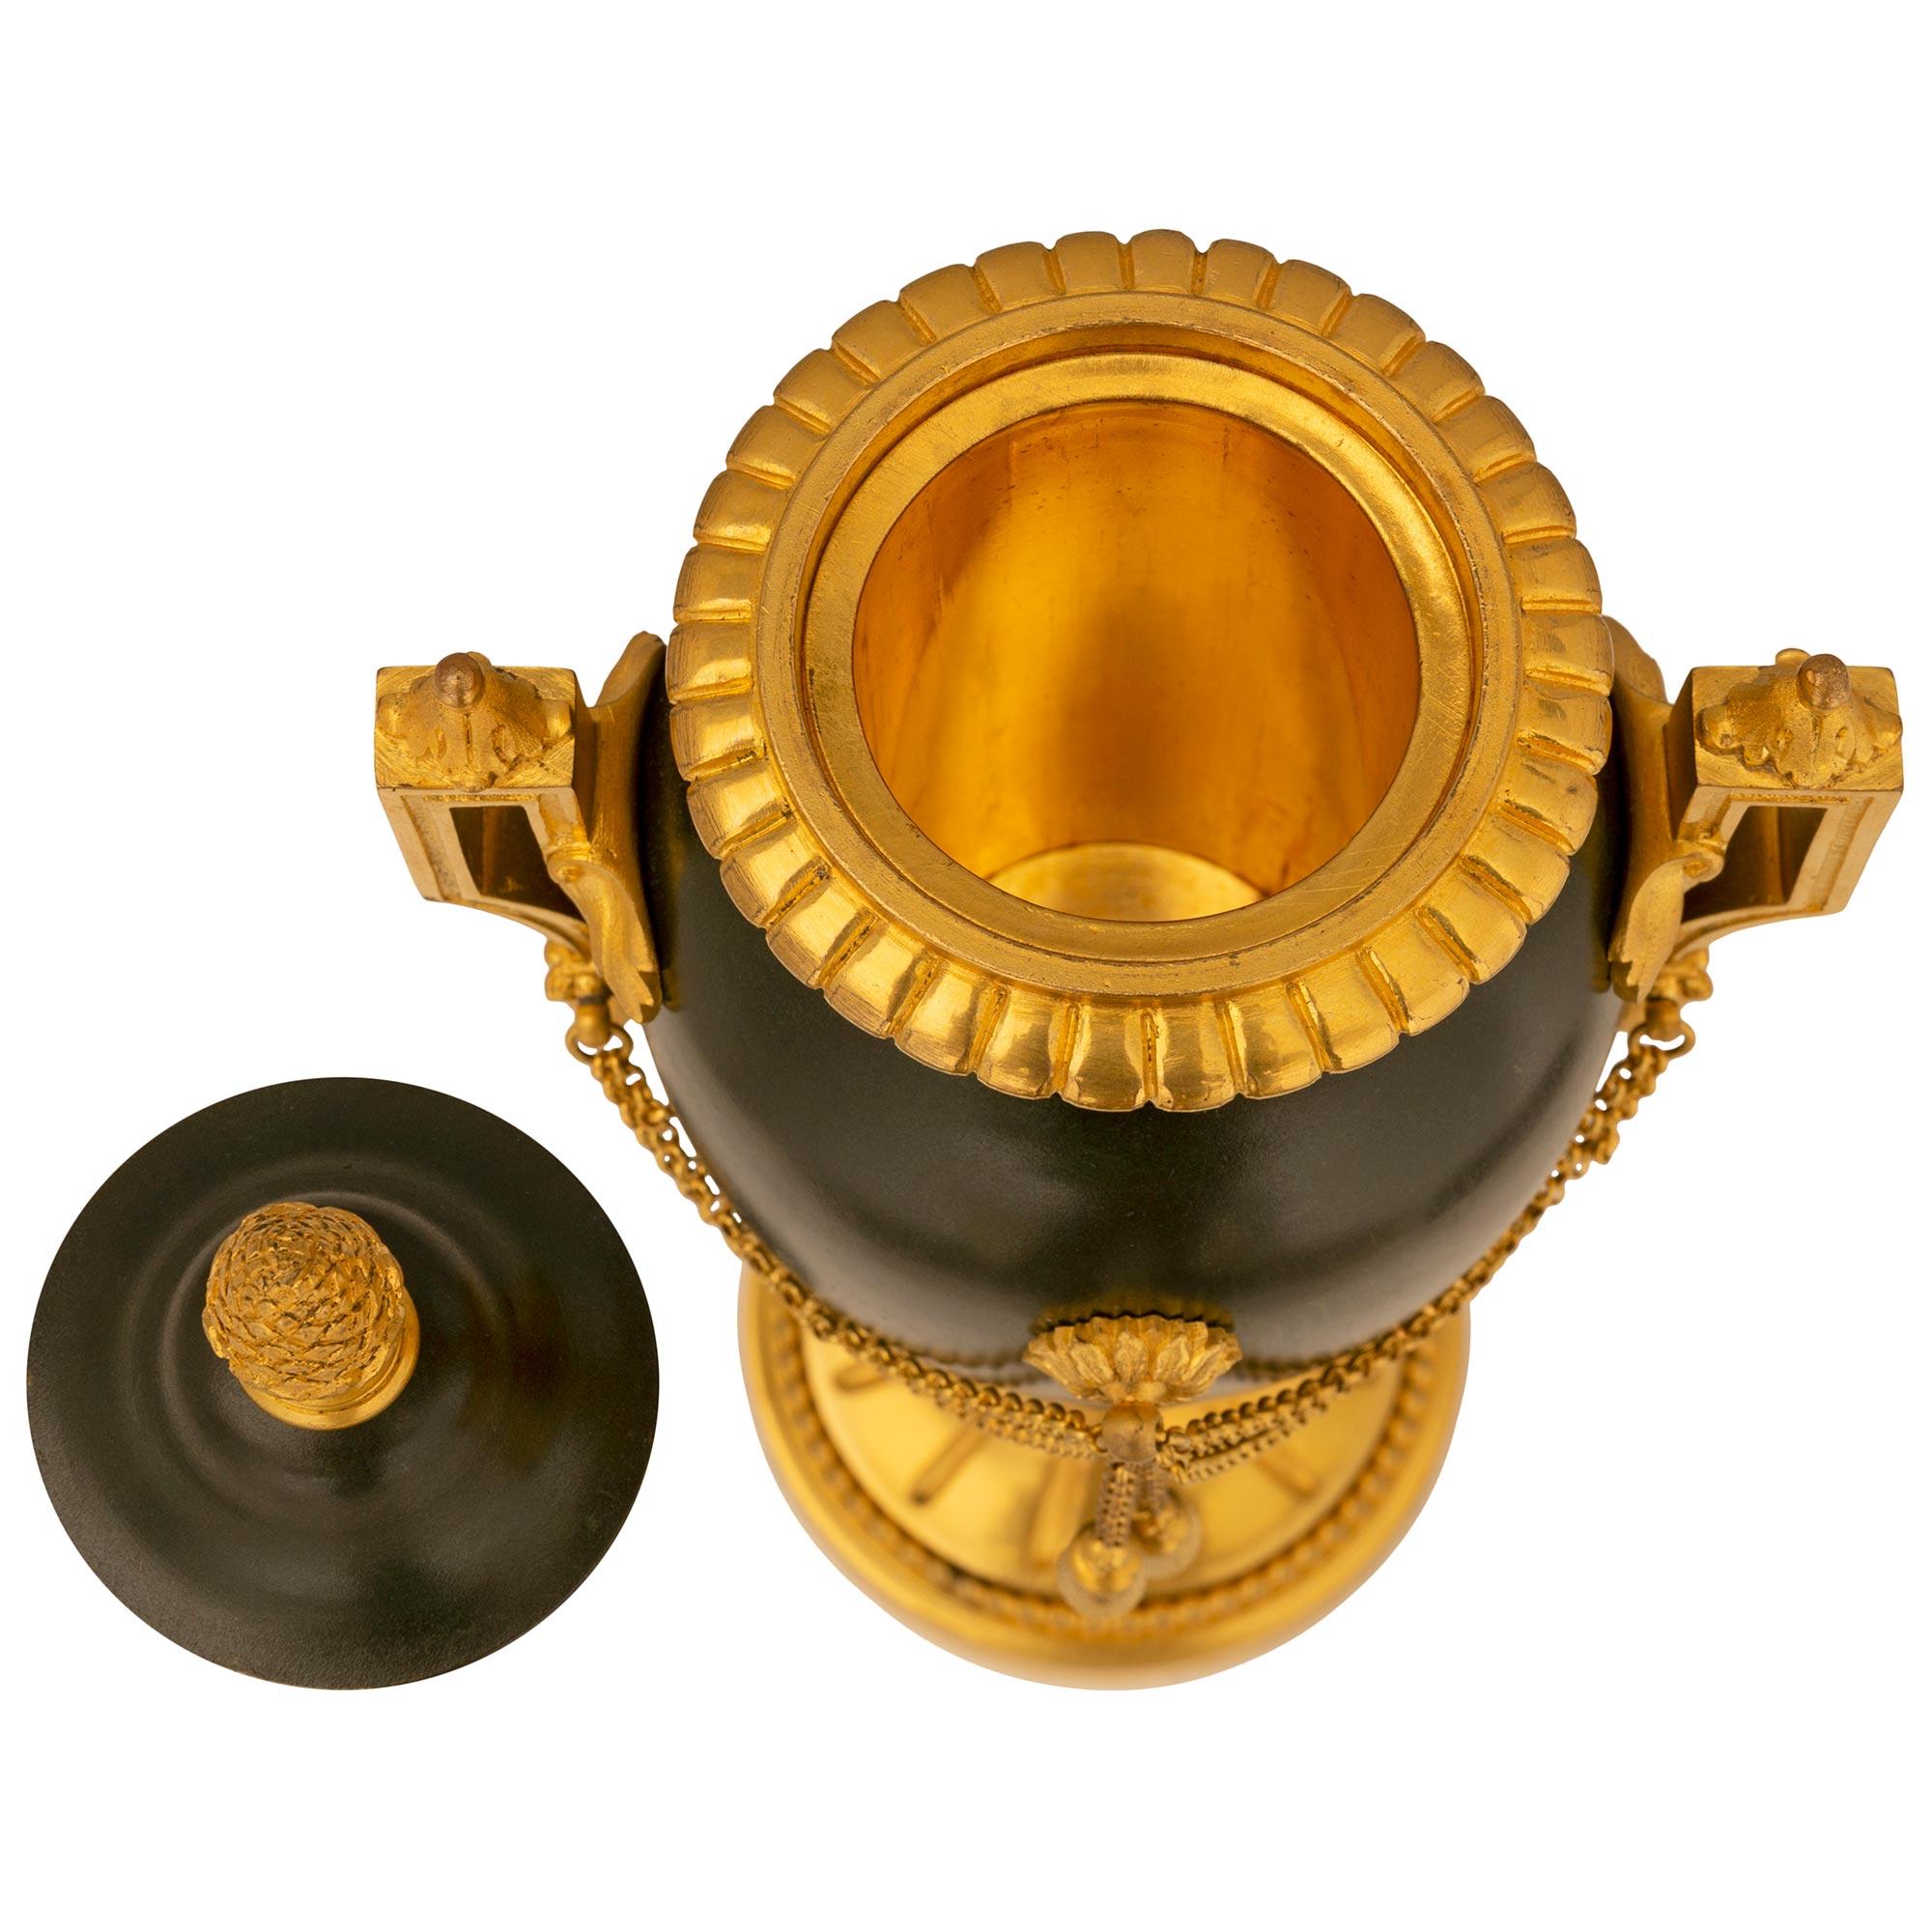 Paire d'élégantes urnes à couvercle en bronze patiné et bronze doré du XIXe siècle, signées Fumiere et Cie. Chaque urne est surélevée par une base circulaire en bronze doré avec une fine bordure mouchetée et une bande perlée enveloppante, sous un